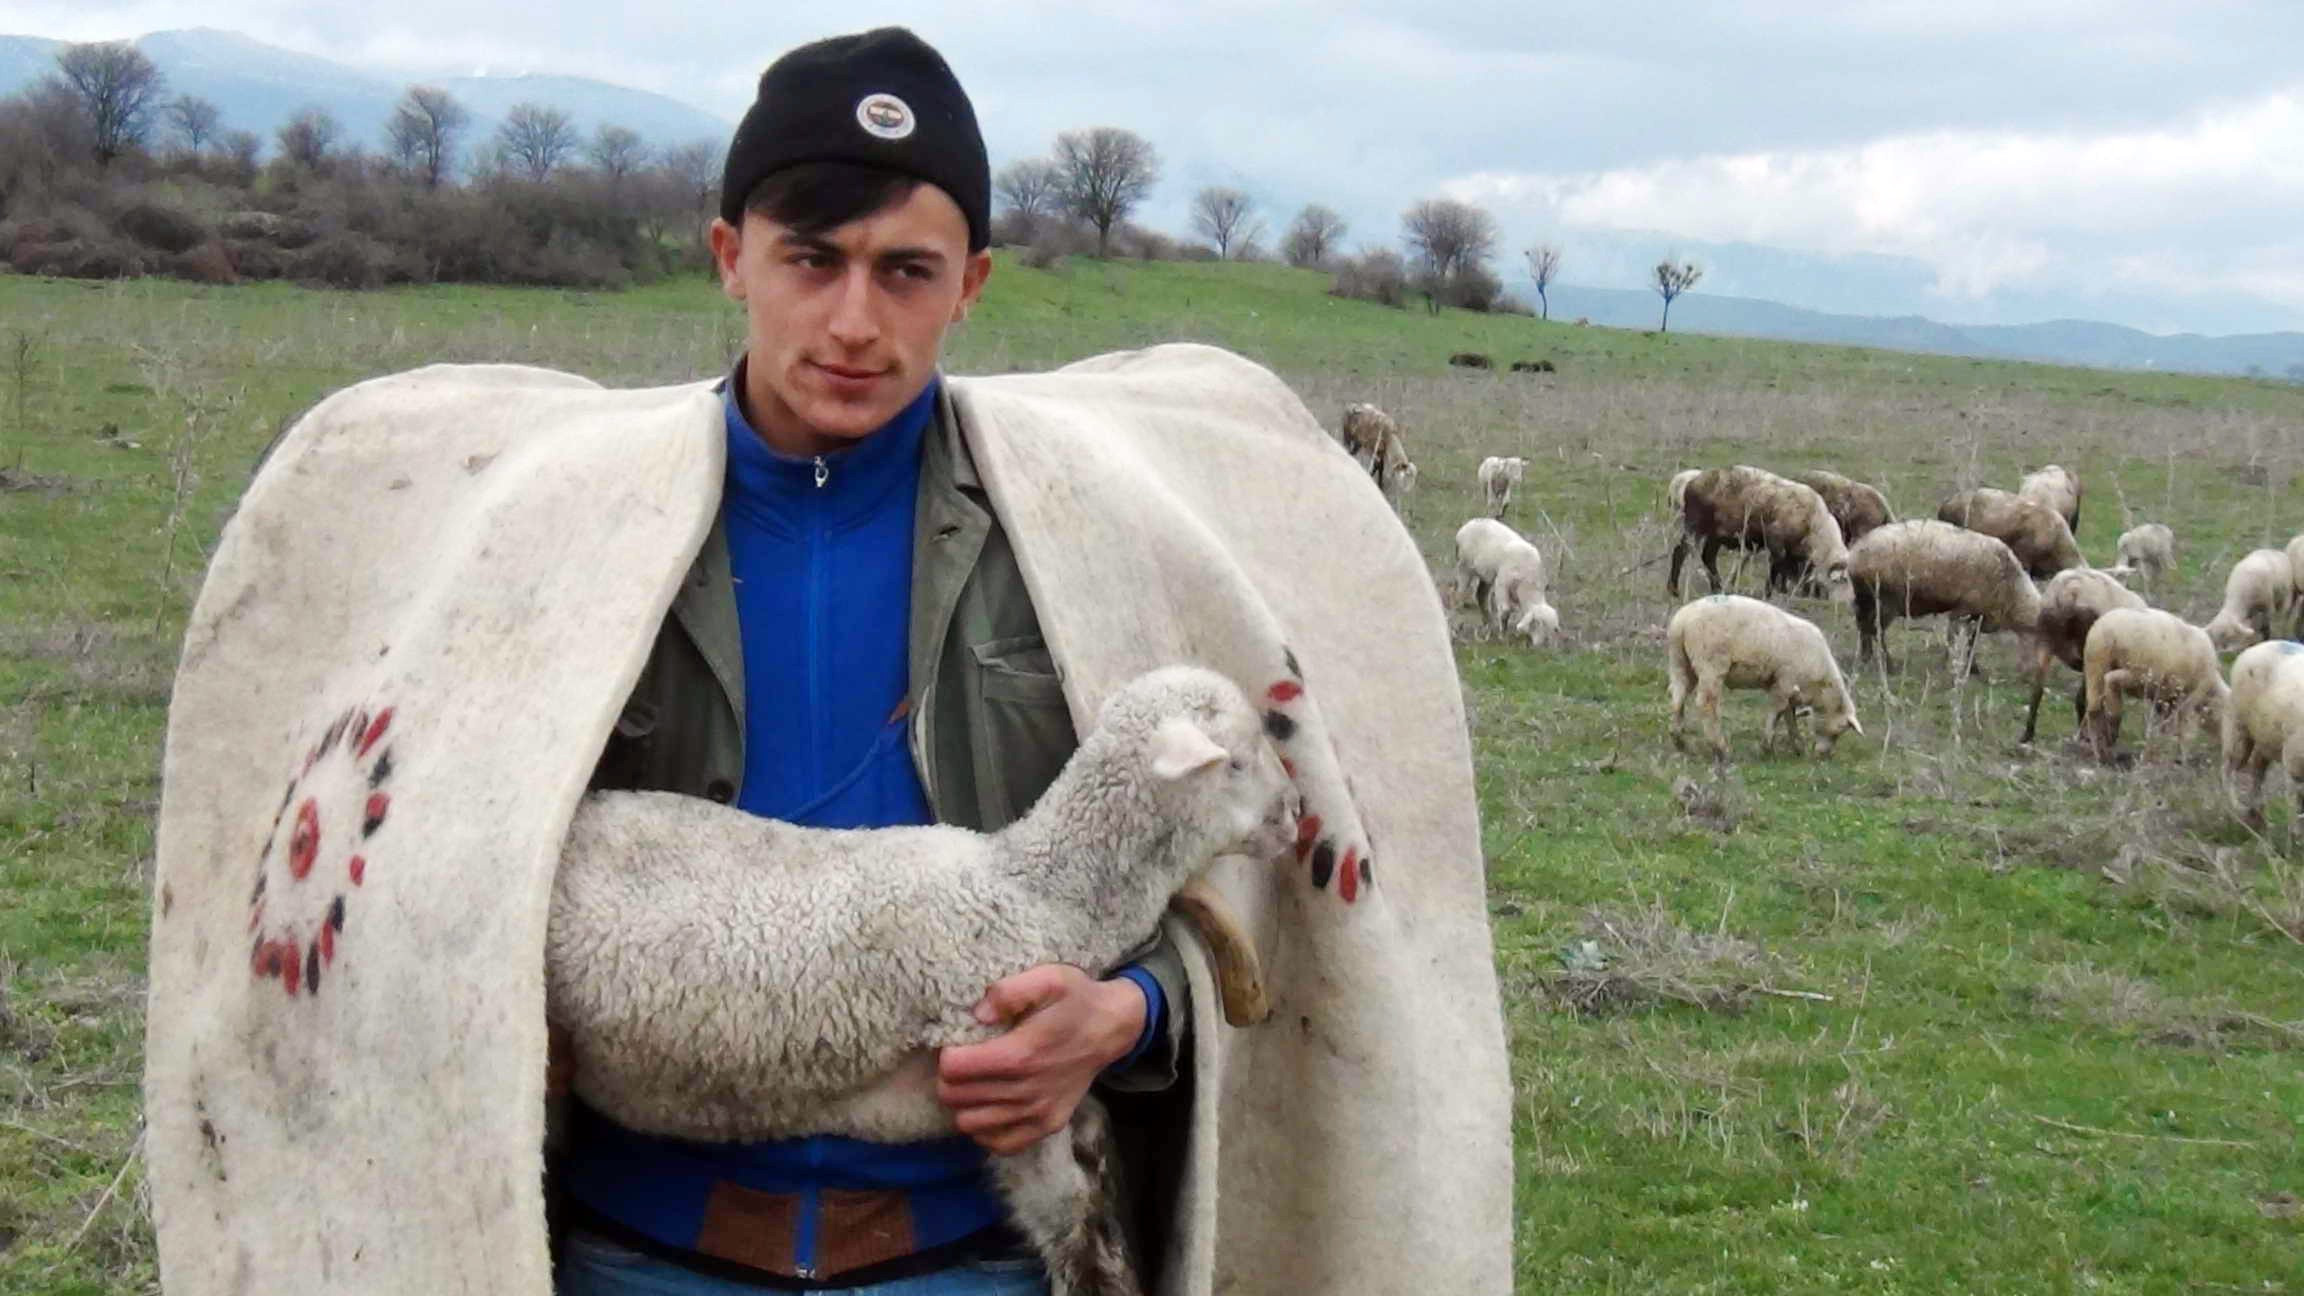 Türkiye'de ilk kez çobanlar için fuar düzenlenecek